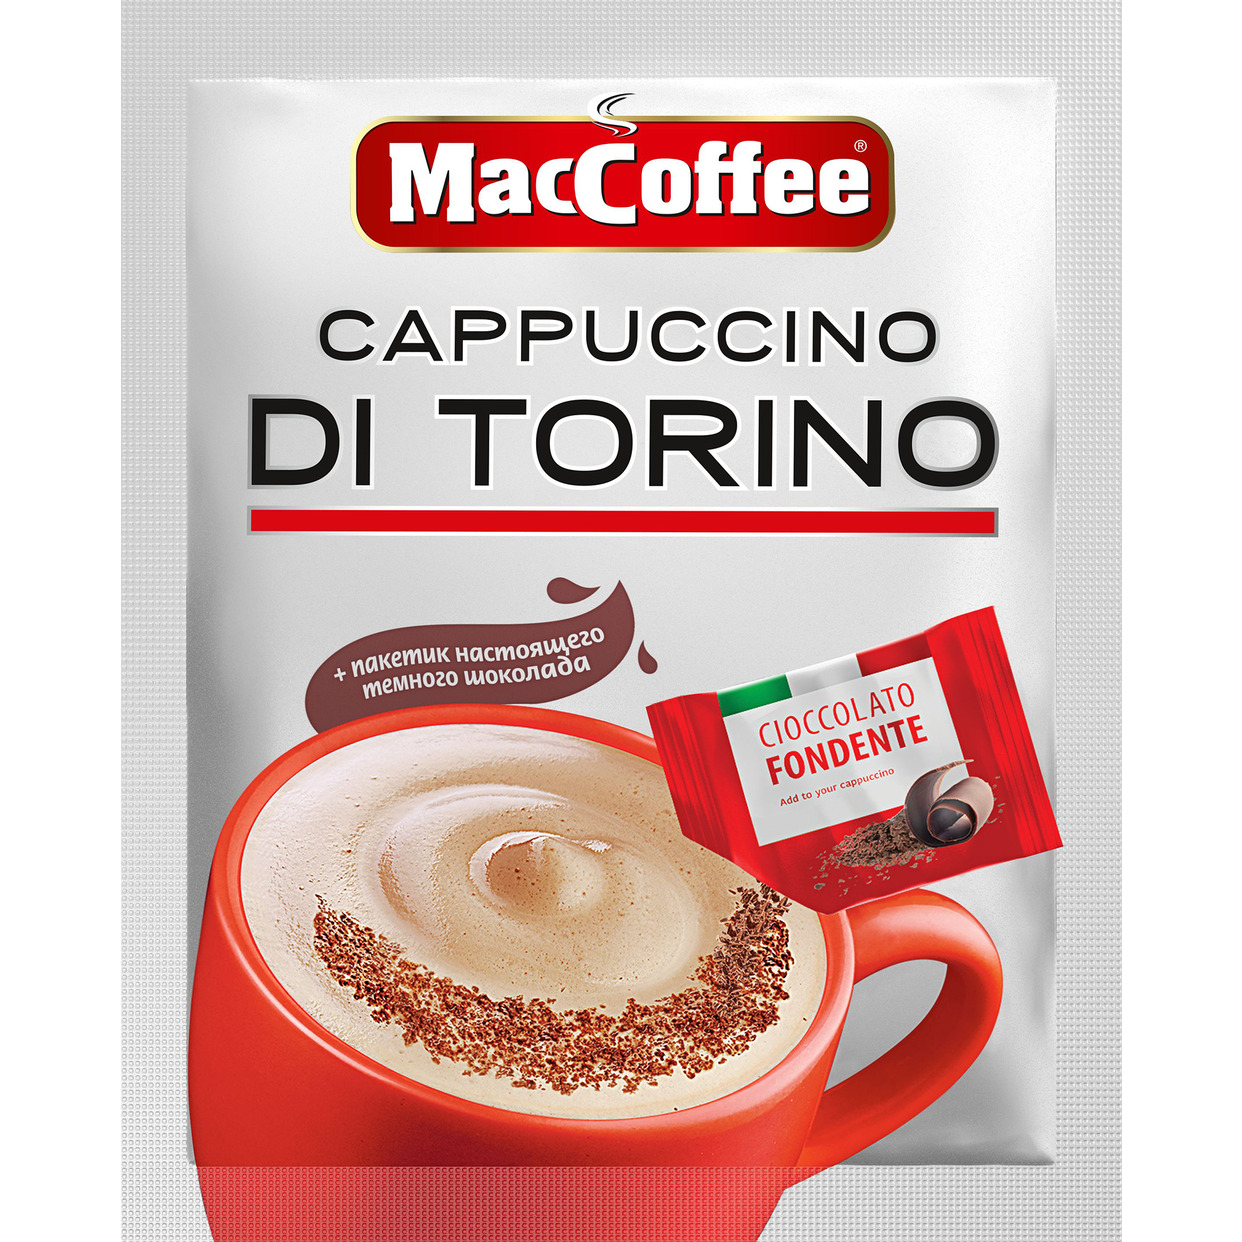 Напиток кофейный растворимый (3 в 1) MacCoffee «Cappuccino DI TORINO» с темным шоколадом 25,5г по акции в Пятерочке